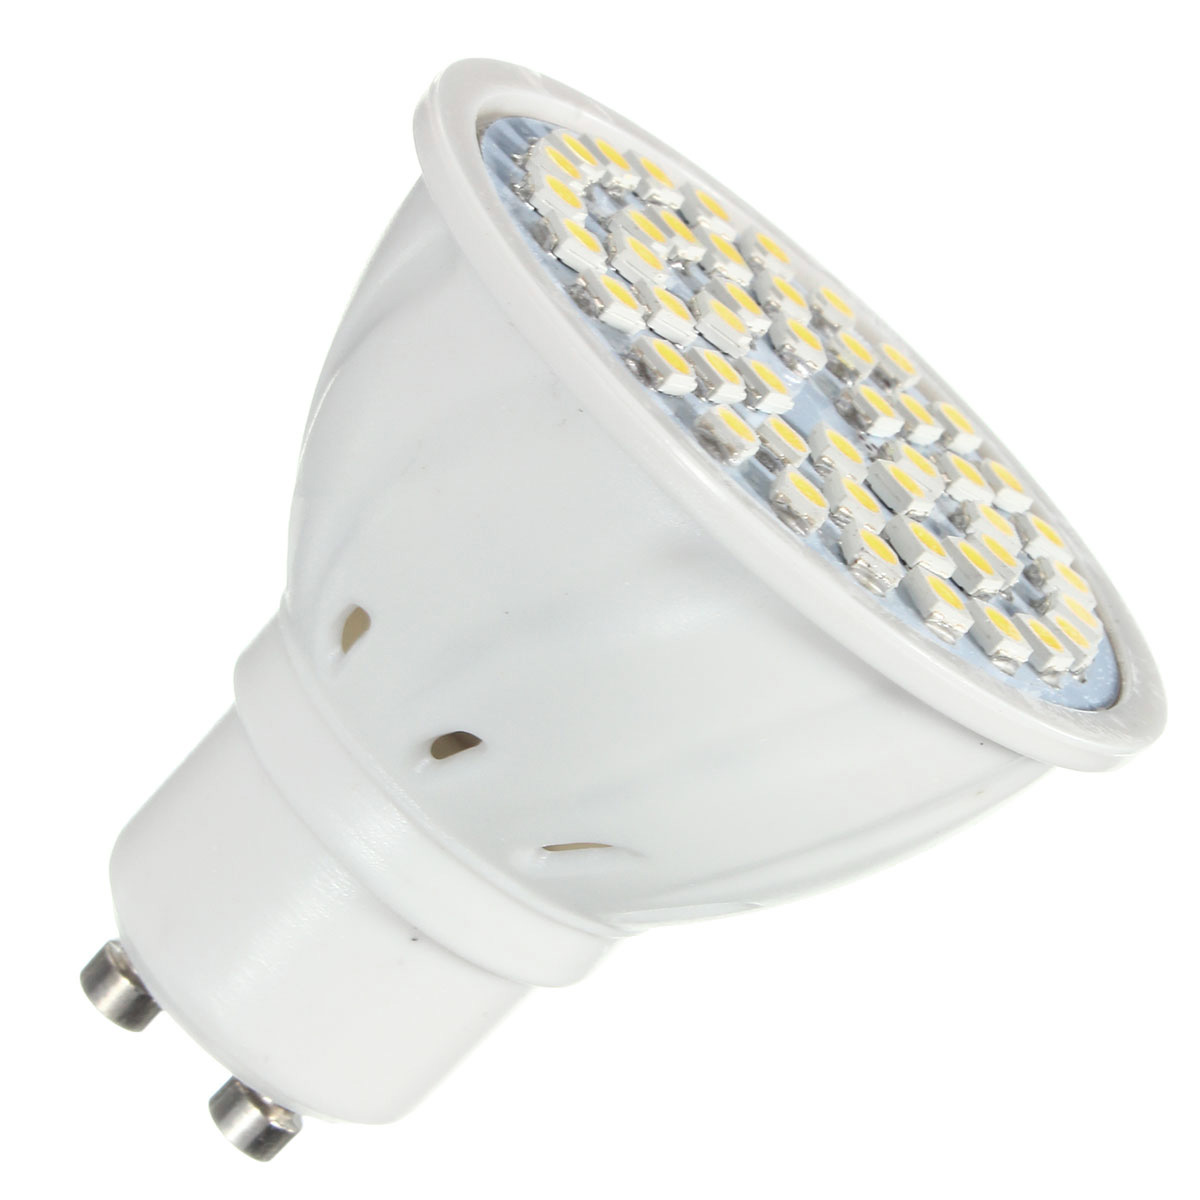 ZX-E27-E14-GU10-MR16-LED-4W-48-SMD-3528-LED-Pure-White-Warm-White-Spot-Lightt-Lamp-Bulb-AC110V-AC220-1076565